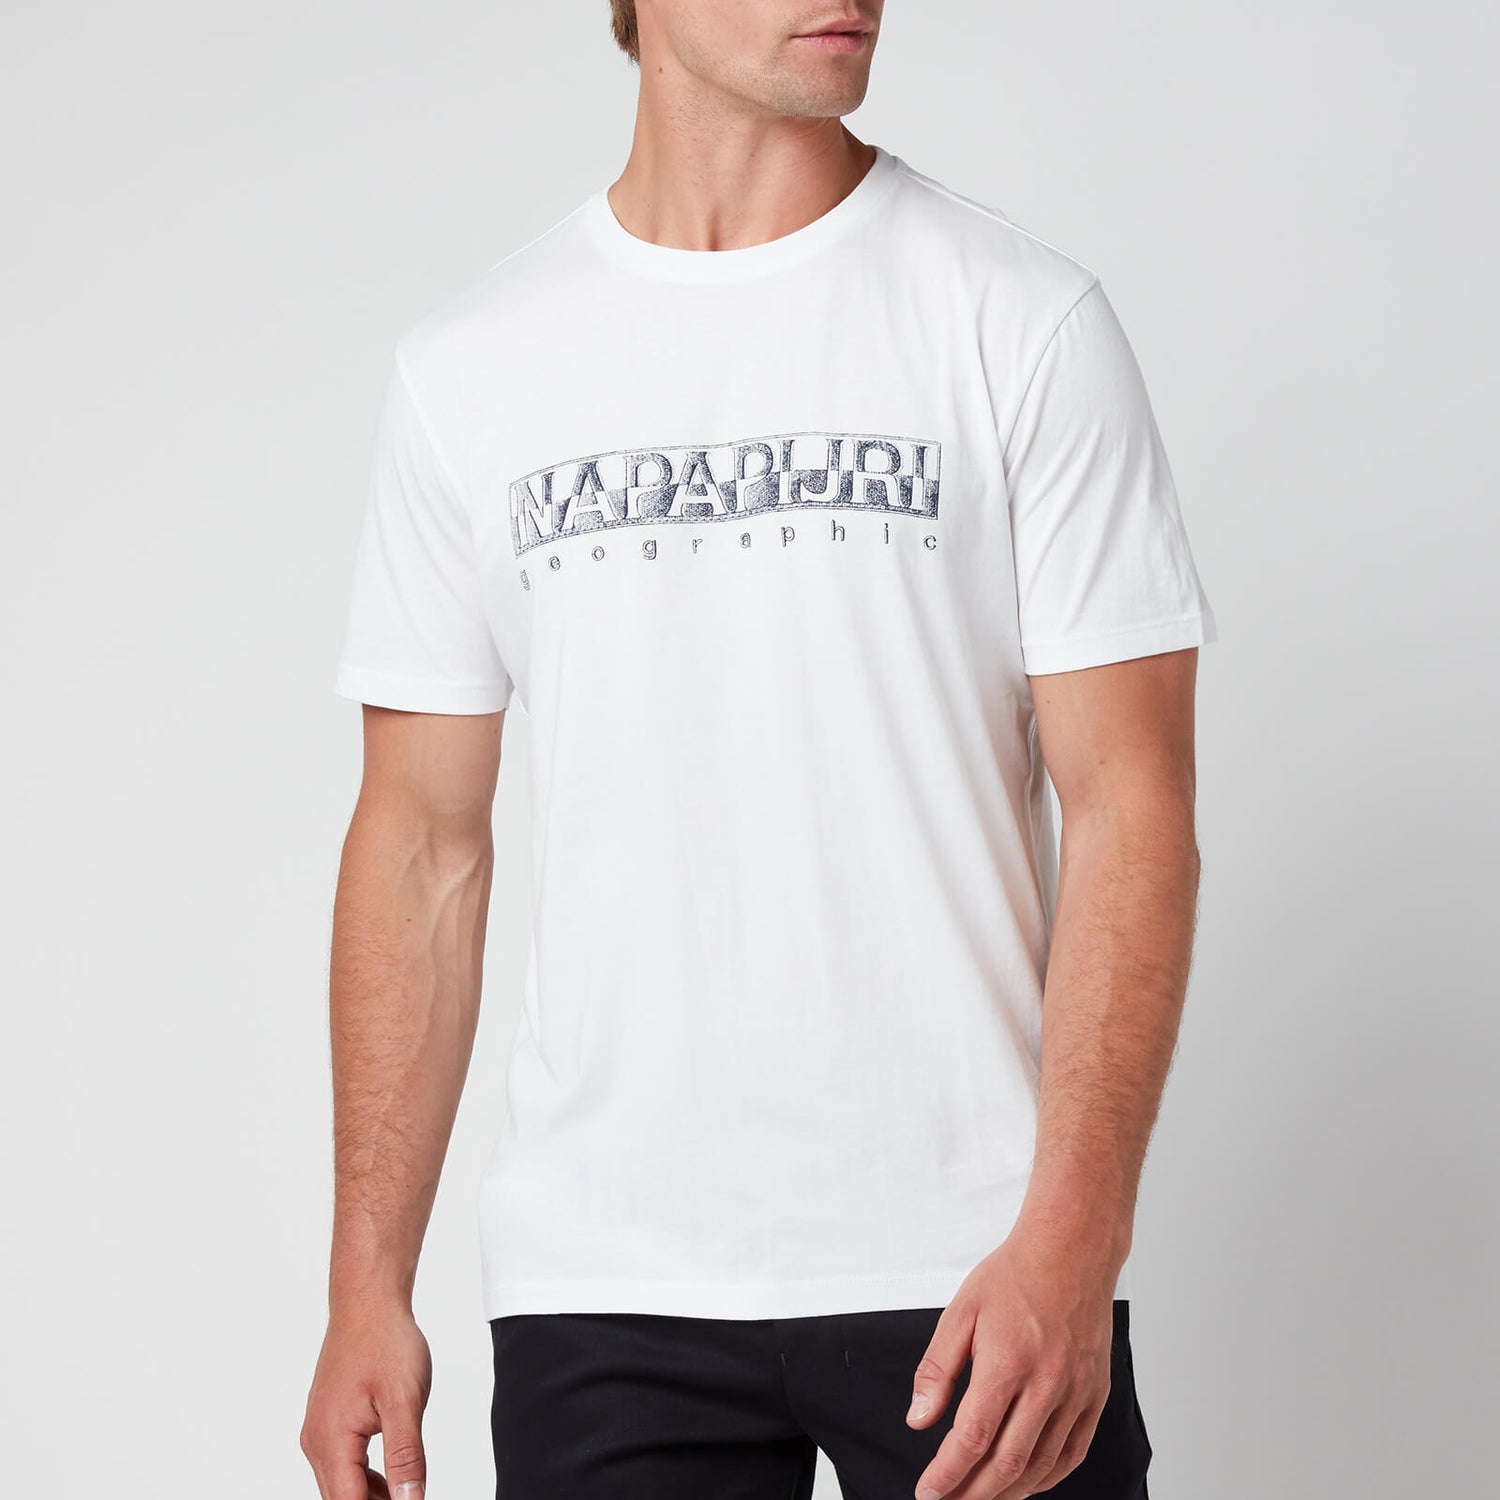 Napapijri Men's Sallar Logo T-Shirt - Bright White